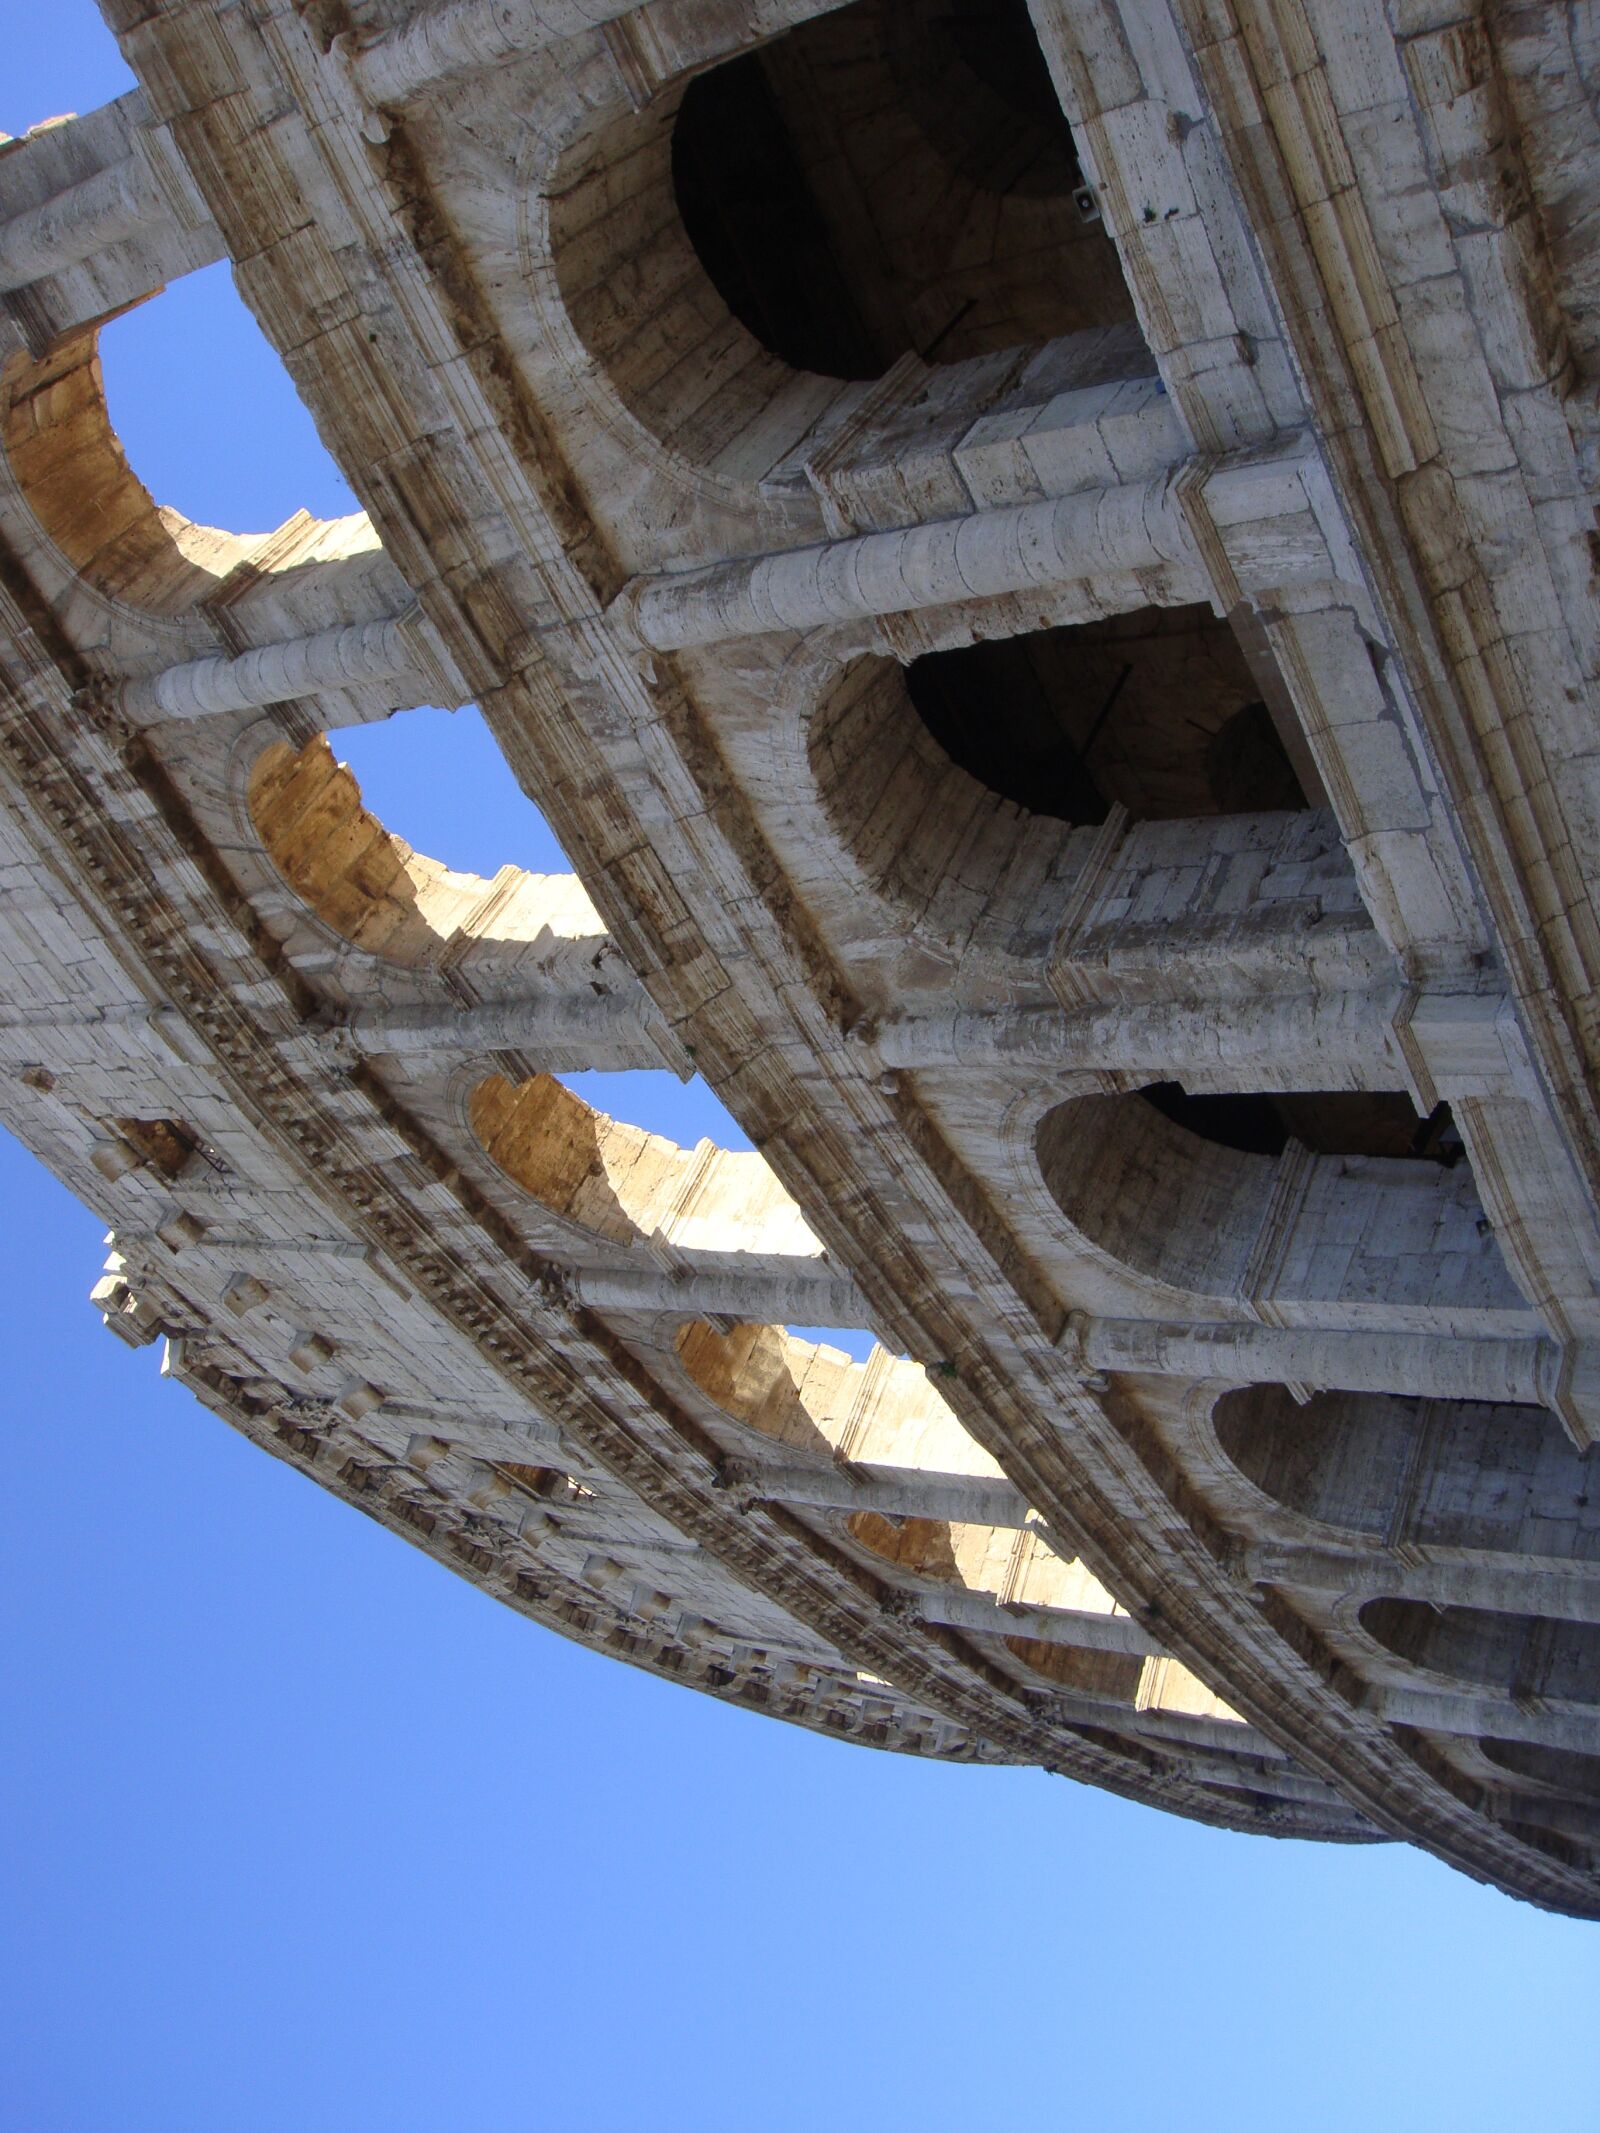 Sony DSC-T77 sample photo. Roman coliseum, ancient rome photography